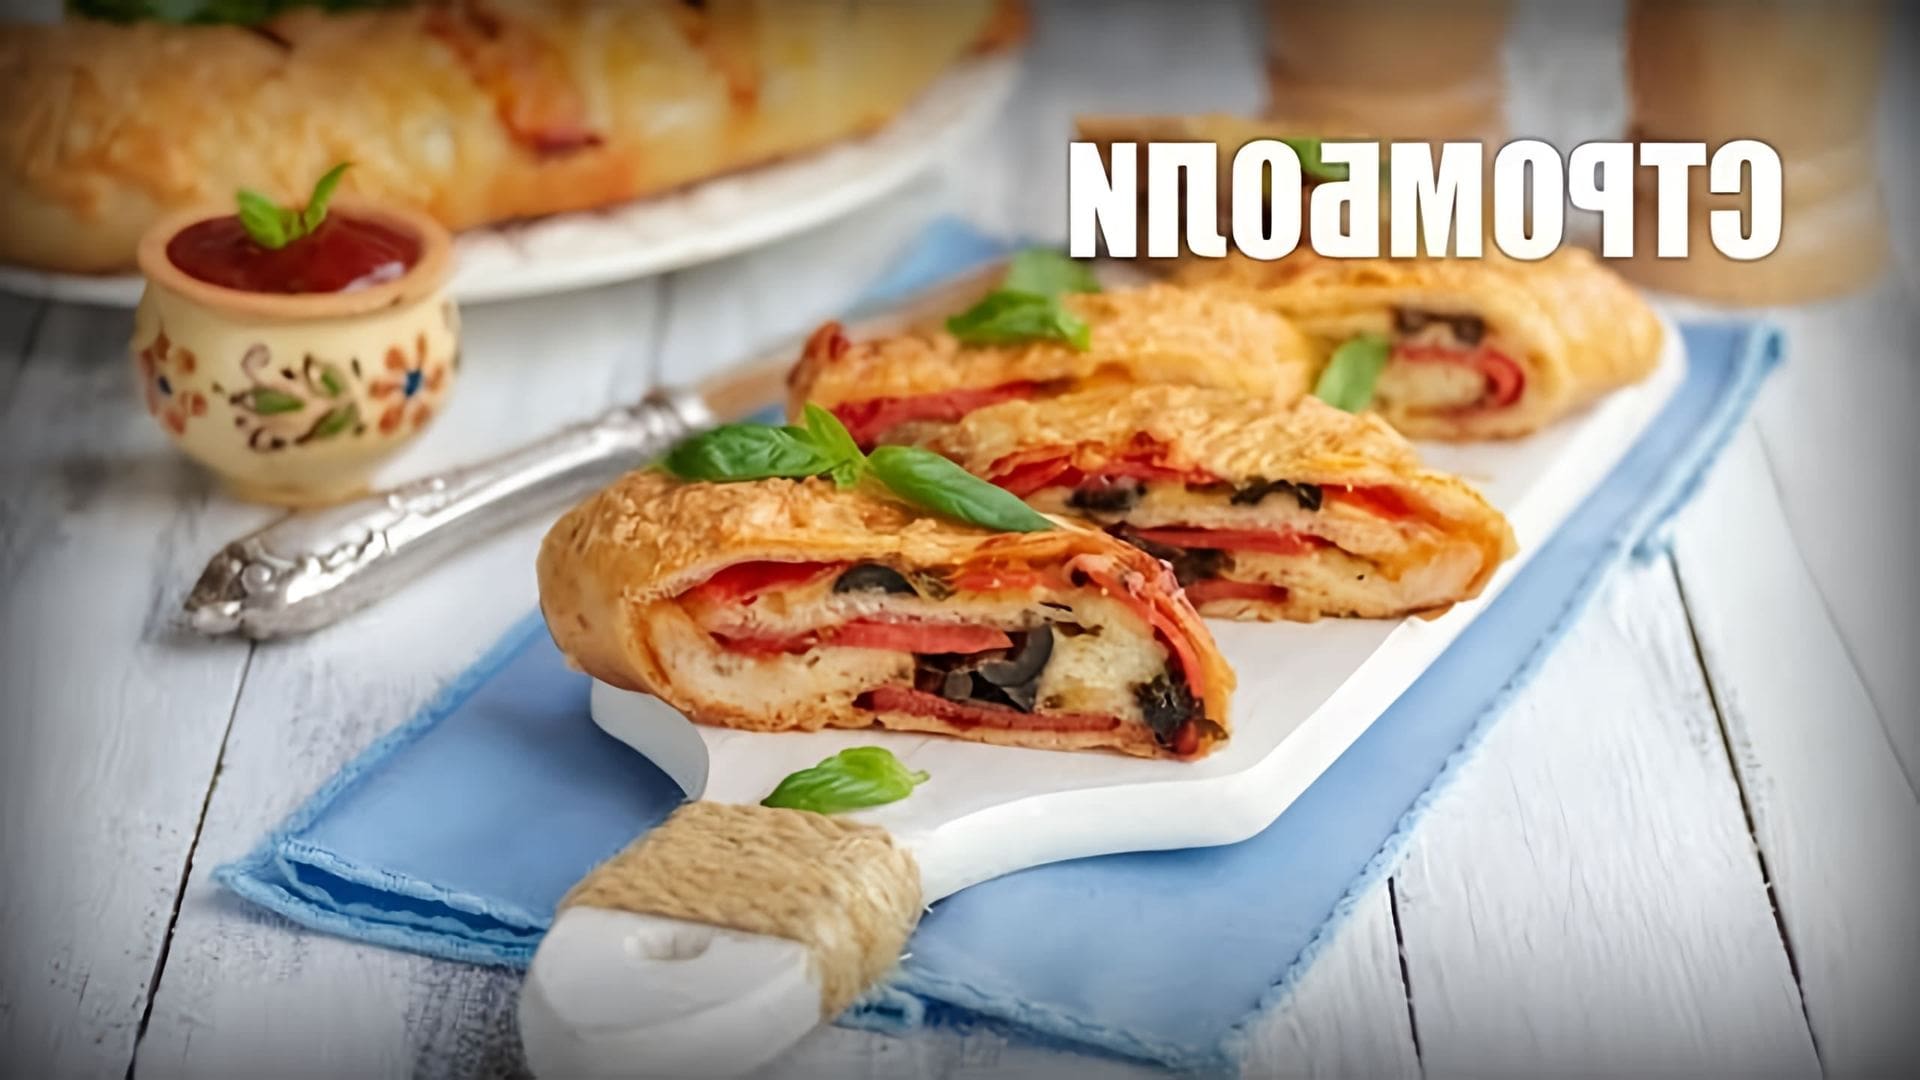 В данном видео демонстрируется процесс приготовления стромболи - итальянской пиццы в форме рулета